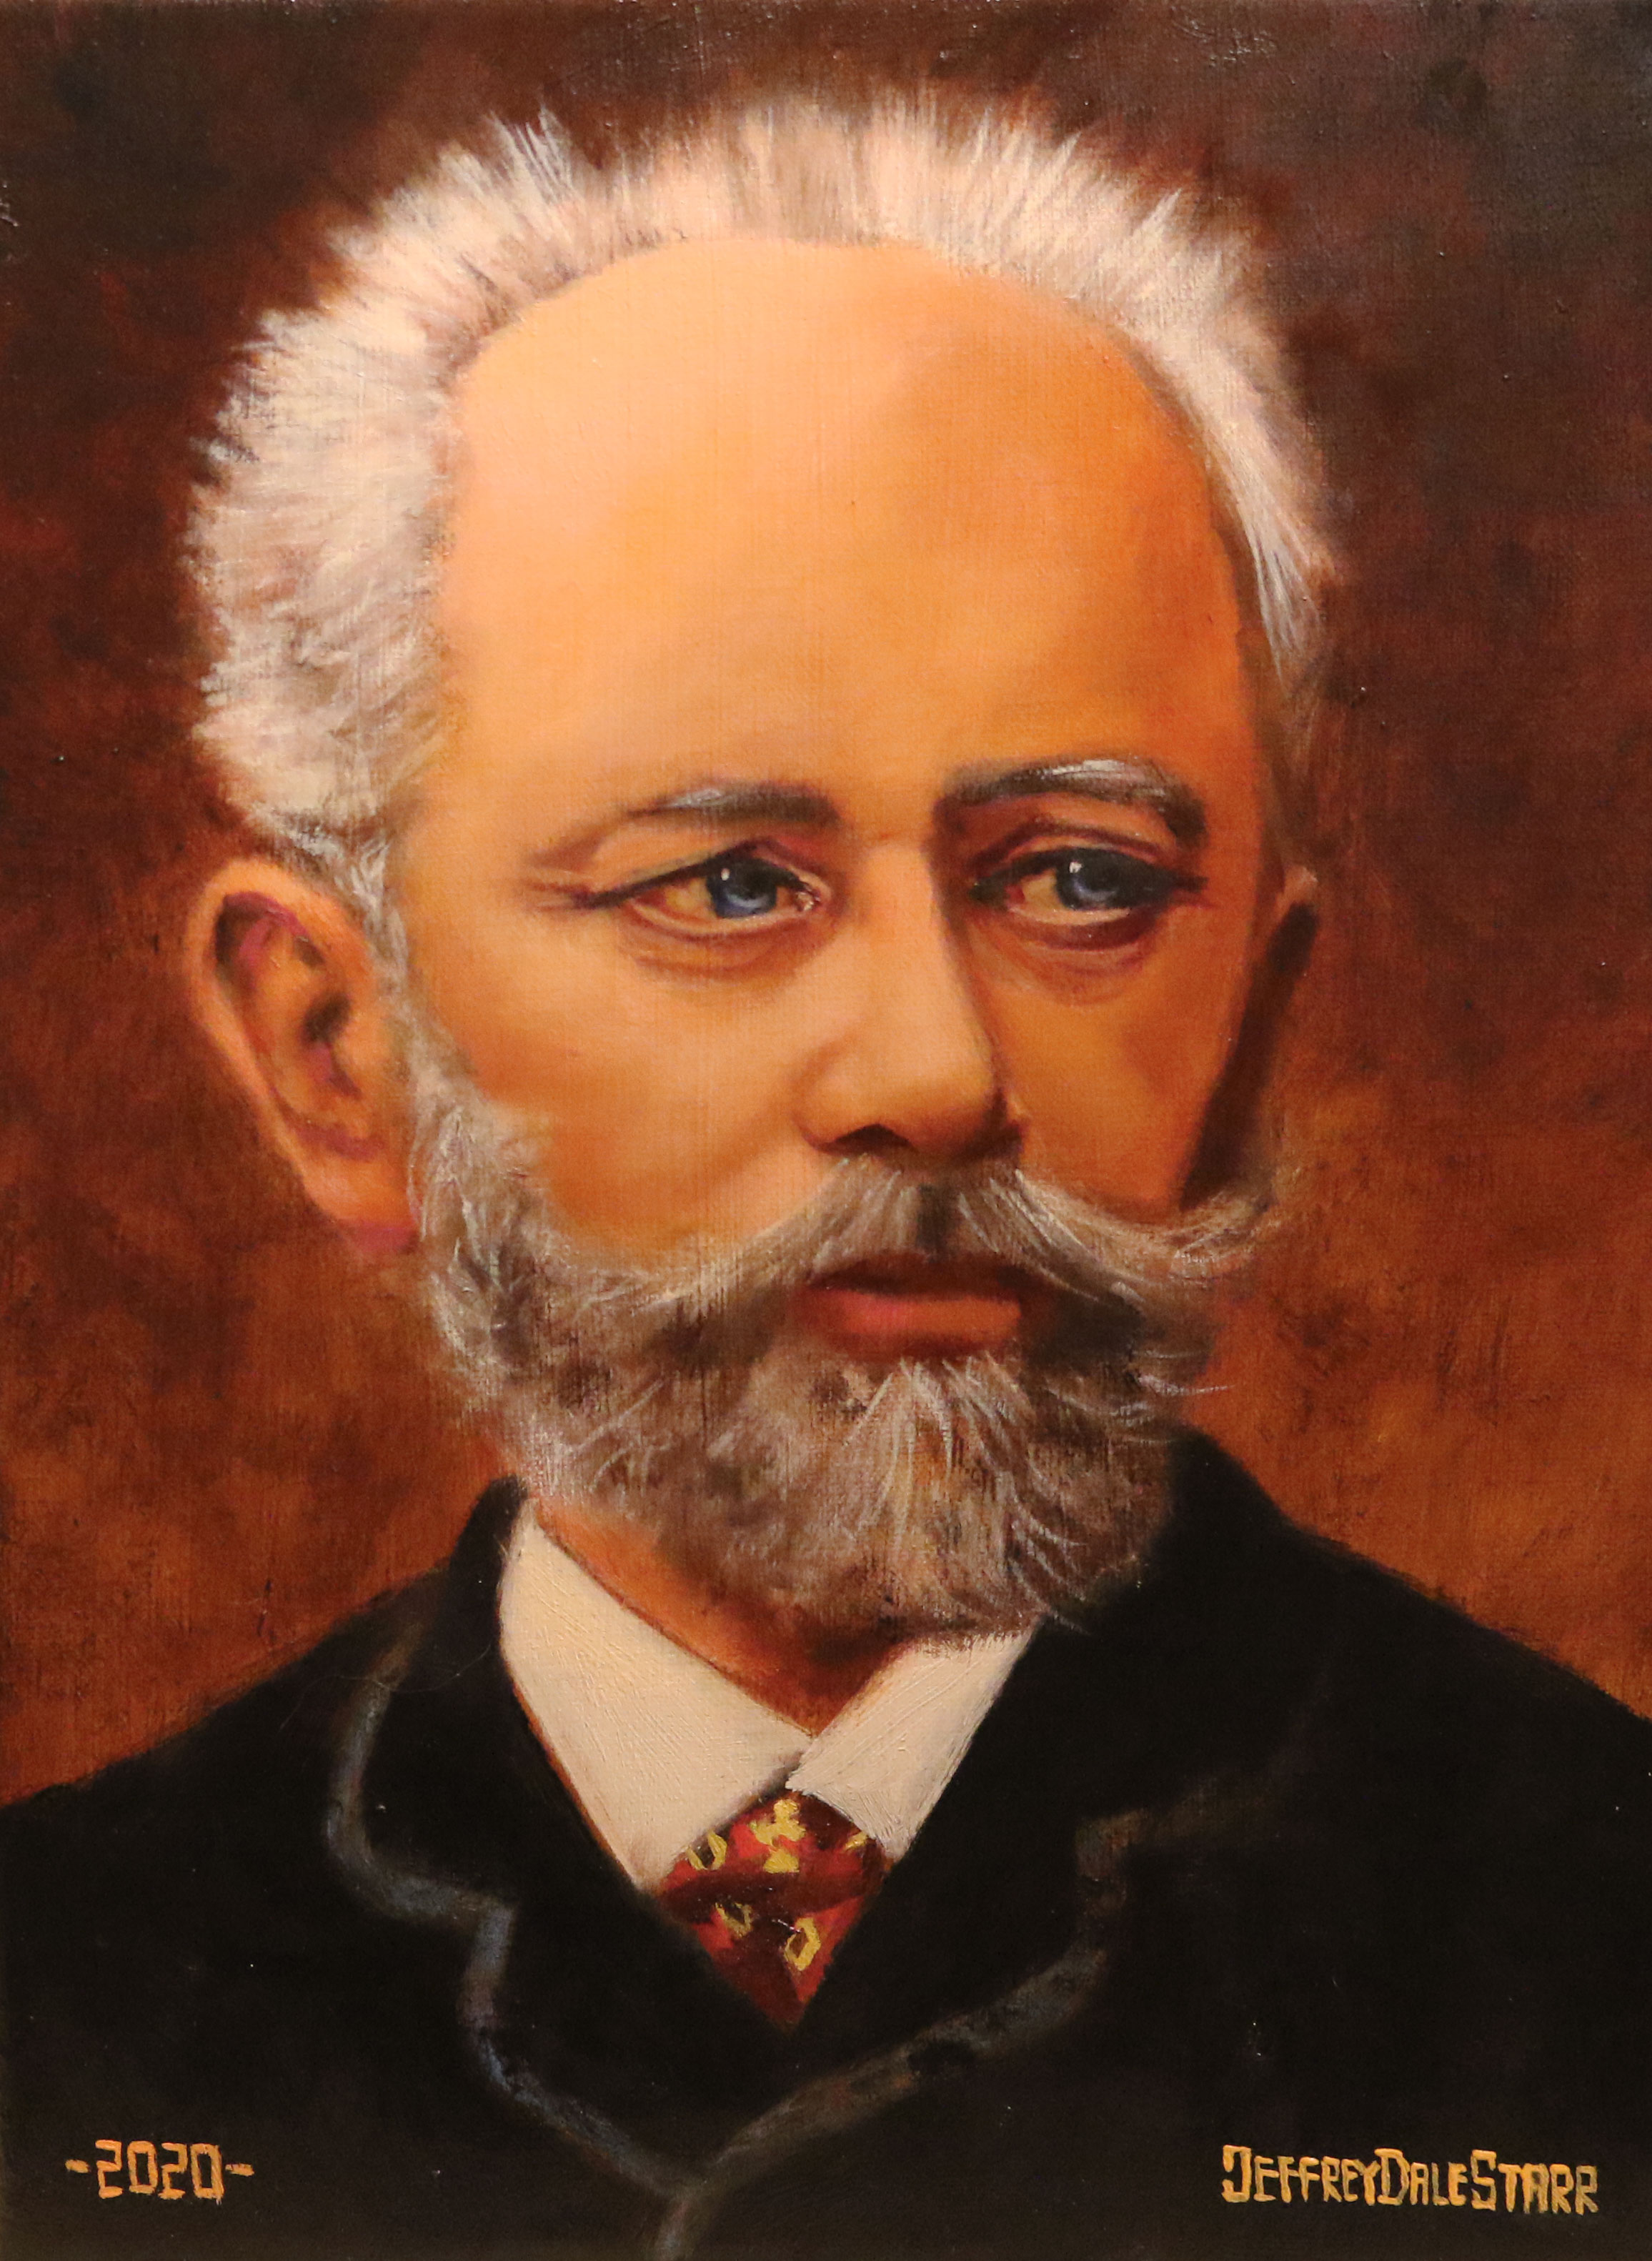 Oil painting "Pyotr Tchaikovsky" by Jeffrey Dale Starr